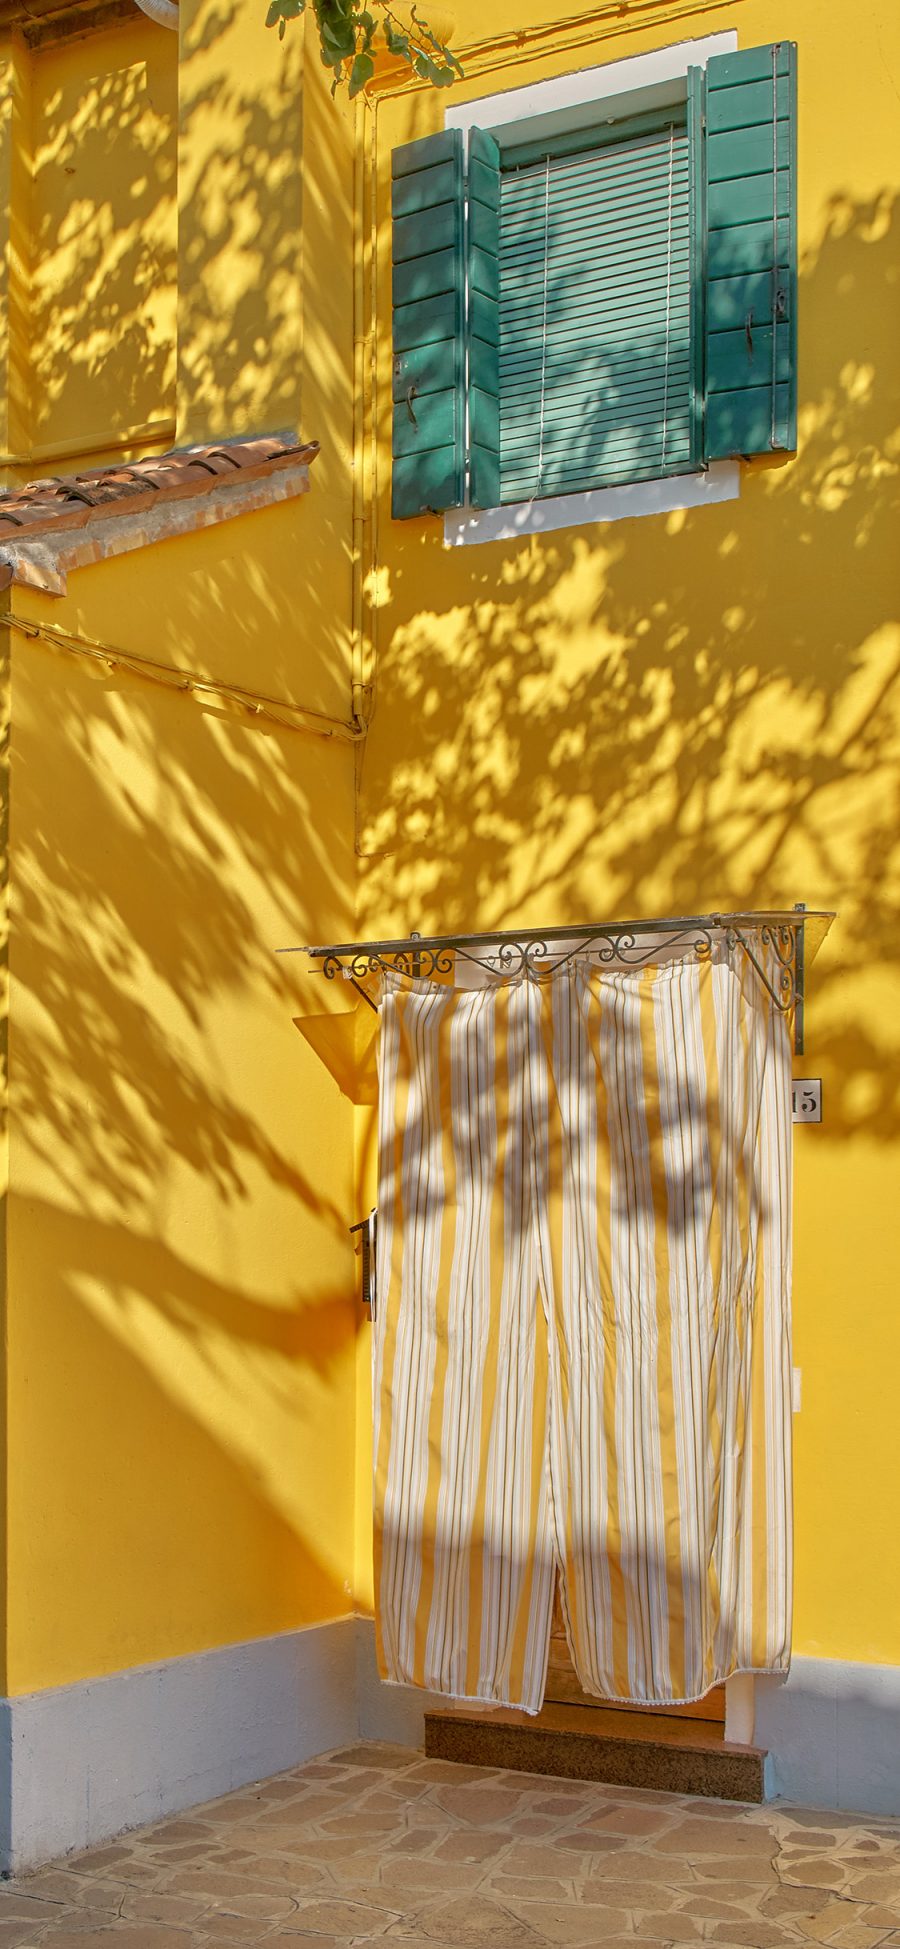 [2436×1125]建筑 楼房 黄色 阳光 苹果手机壁纸图片